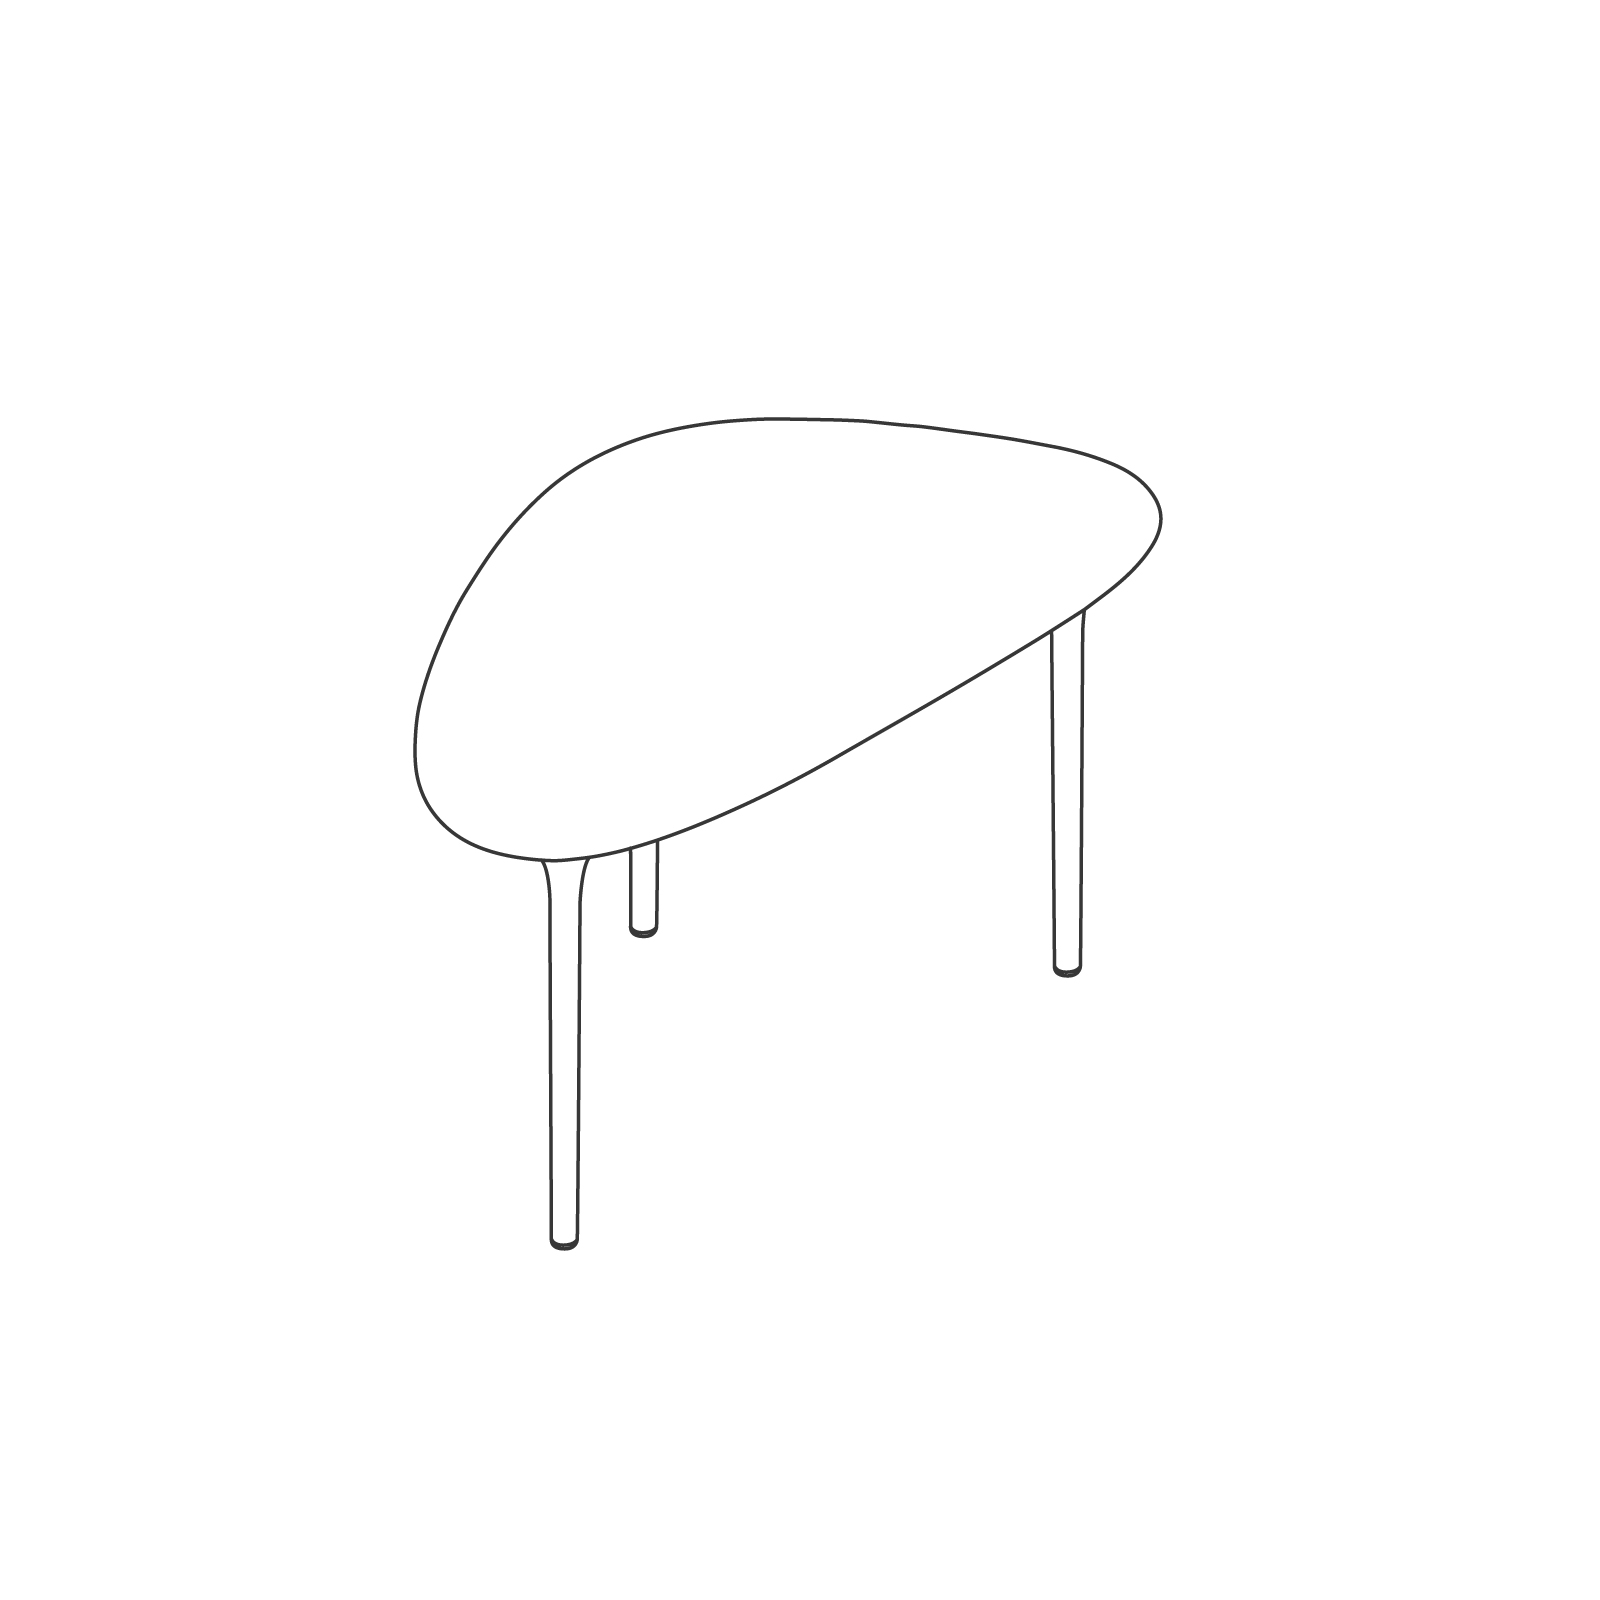 ラインドローイング - サイクレイド テーブル – 高